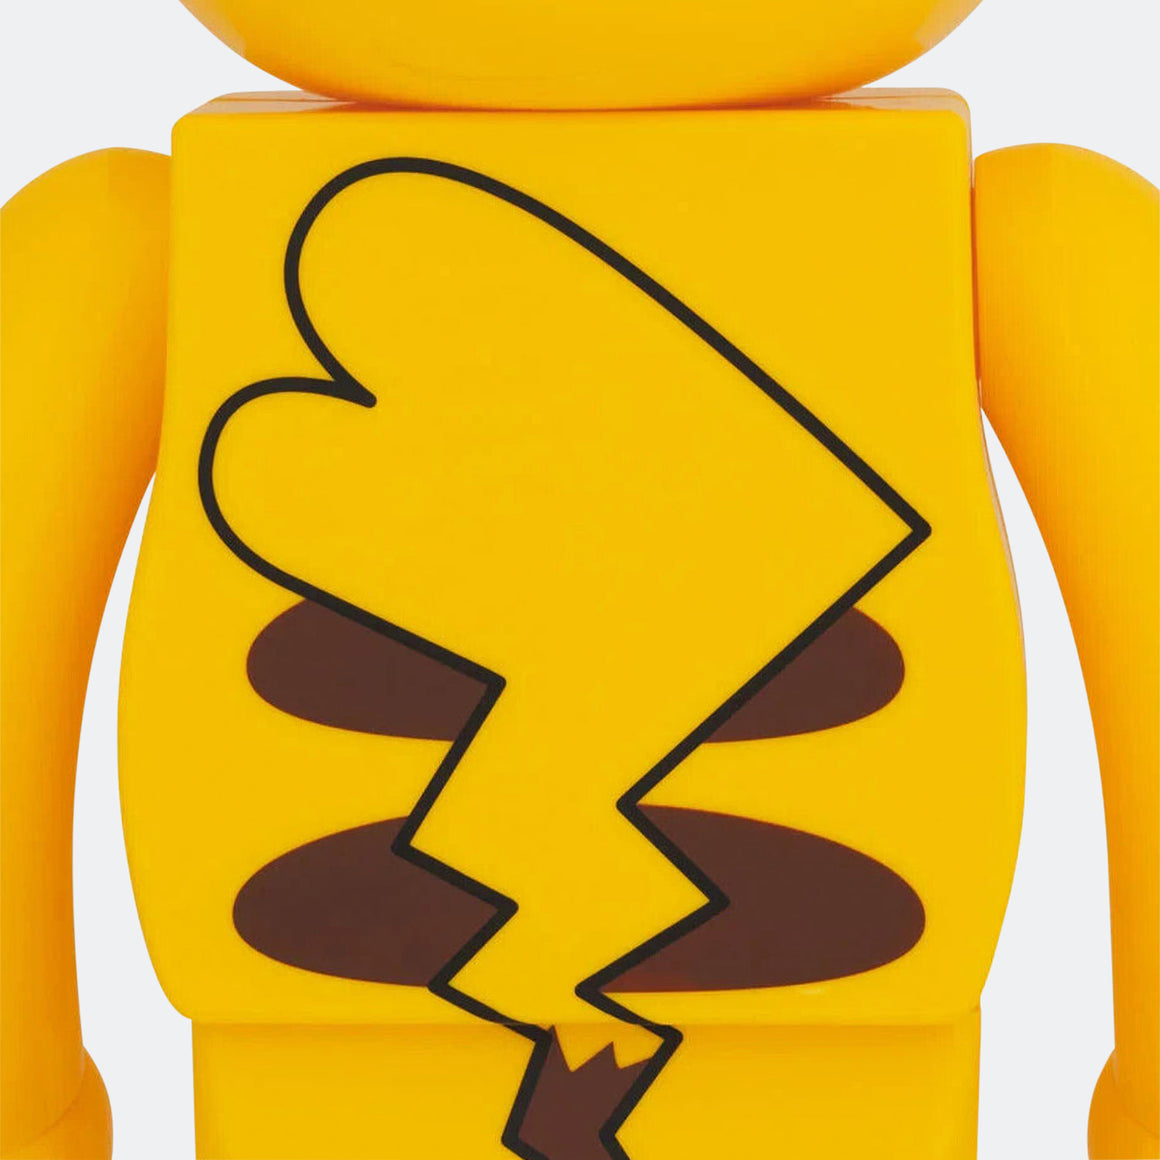 Medicom Toy - Be@rbrick × Pokémon 400% Set - Pikachu Female Version - UP THERE